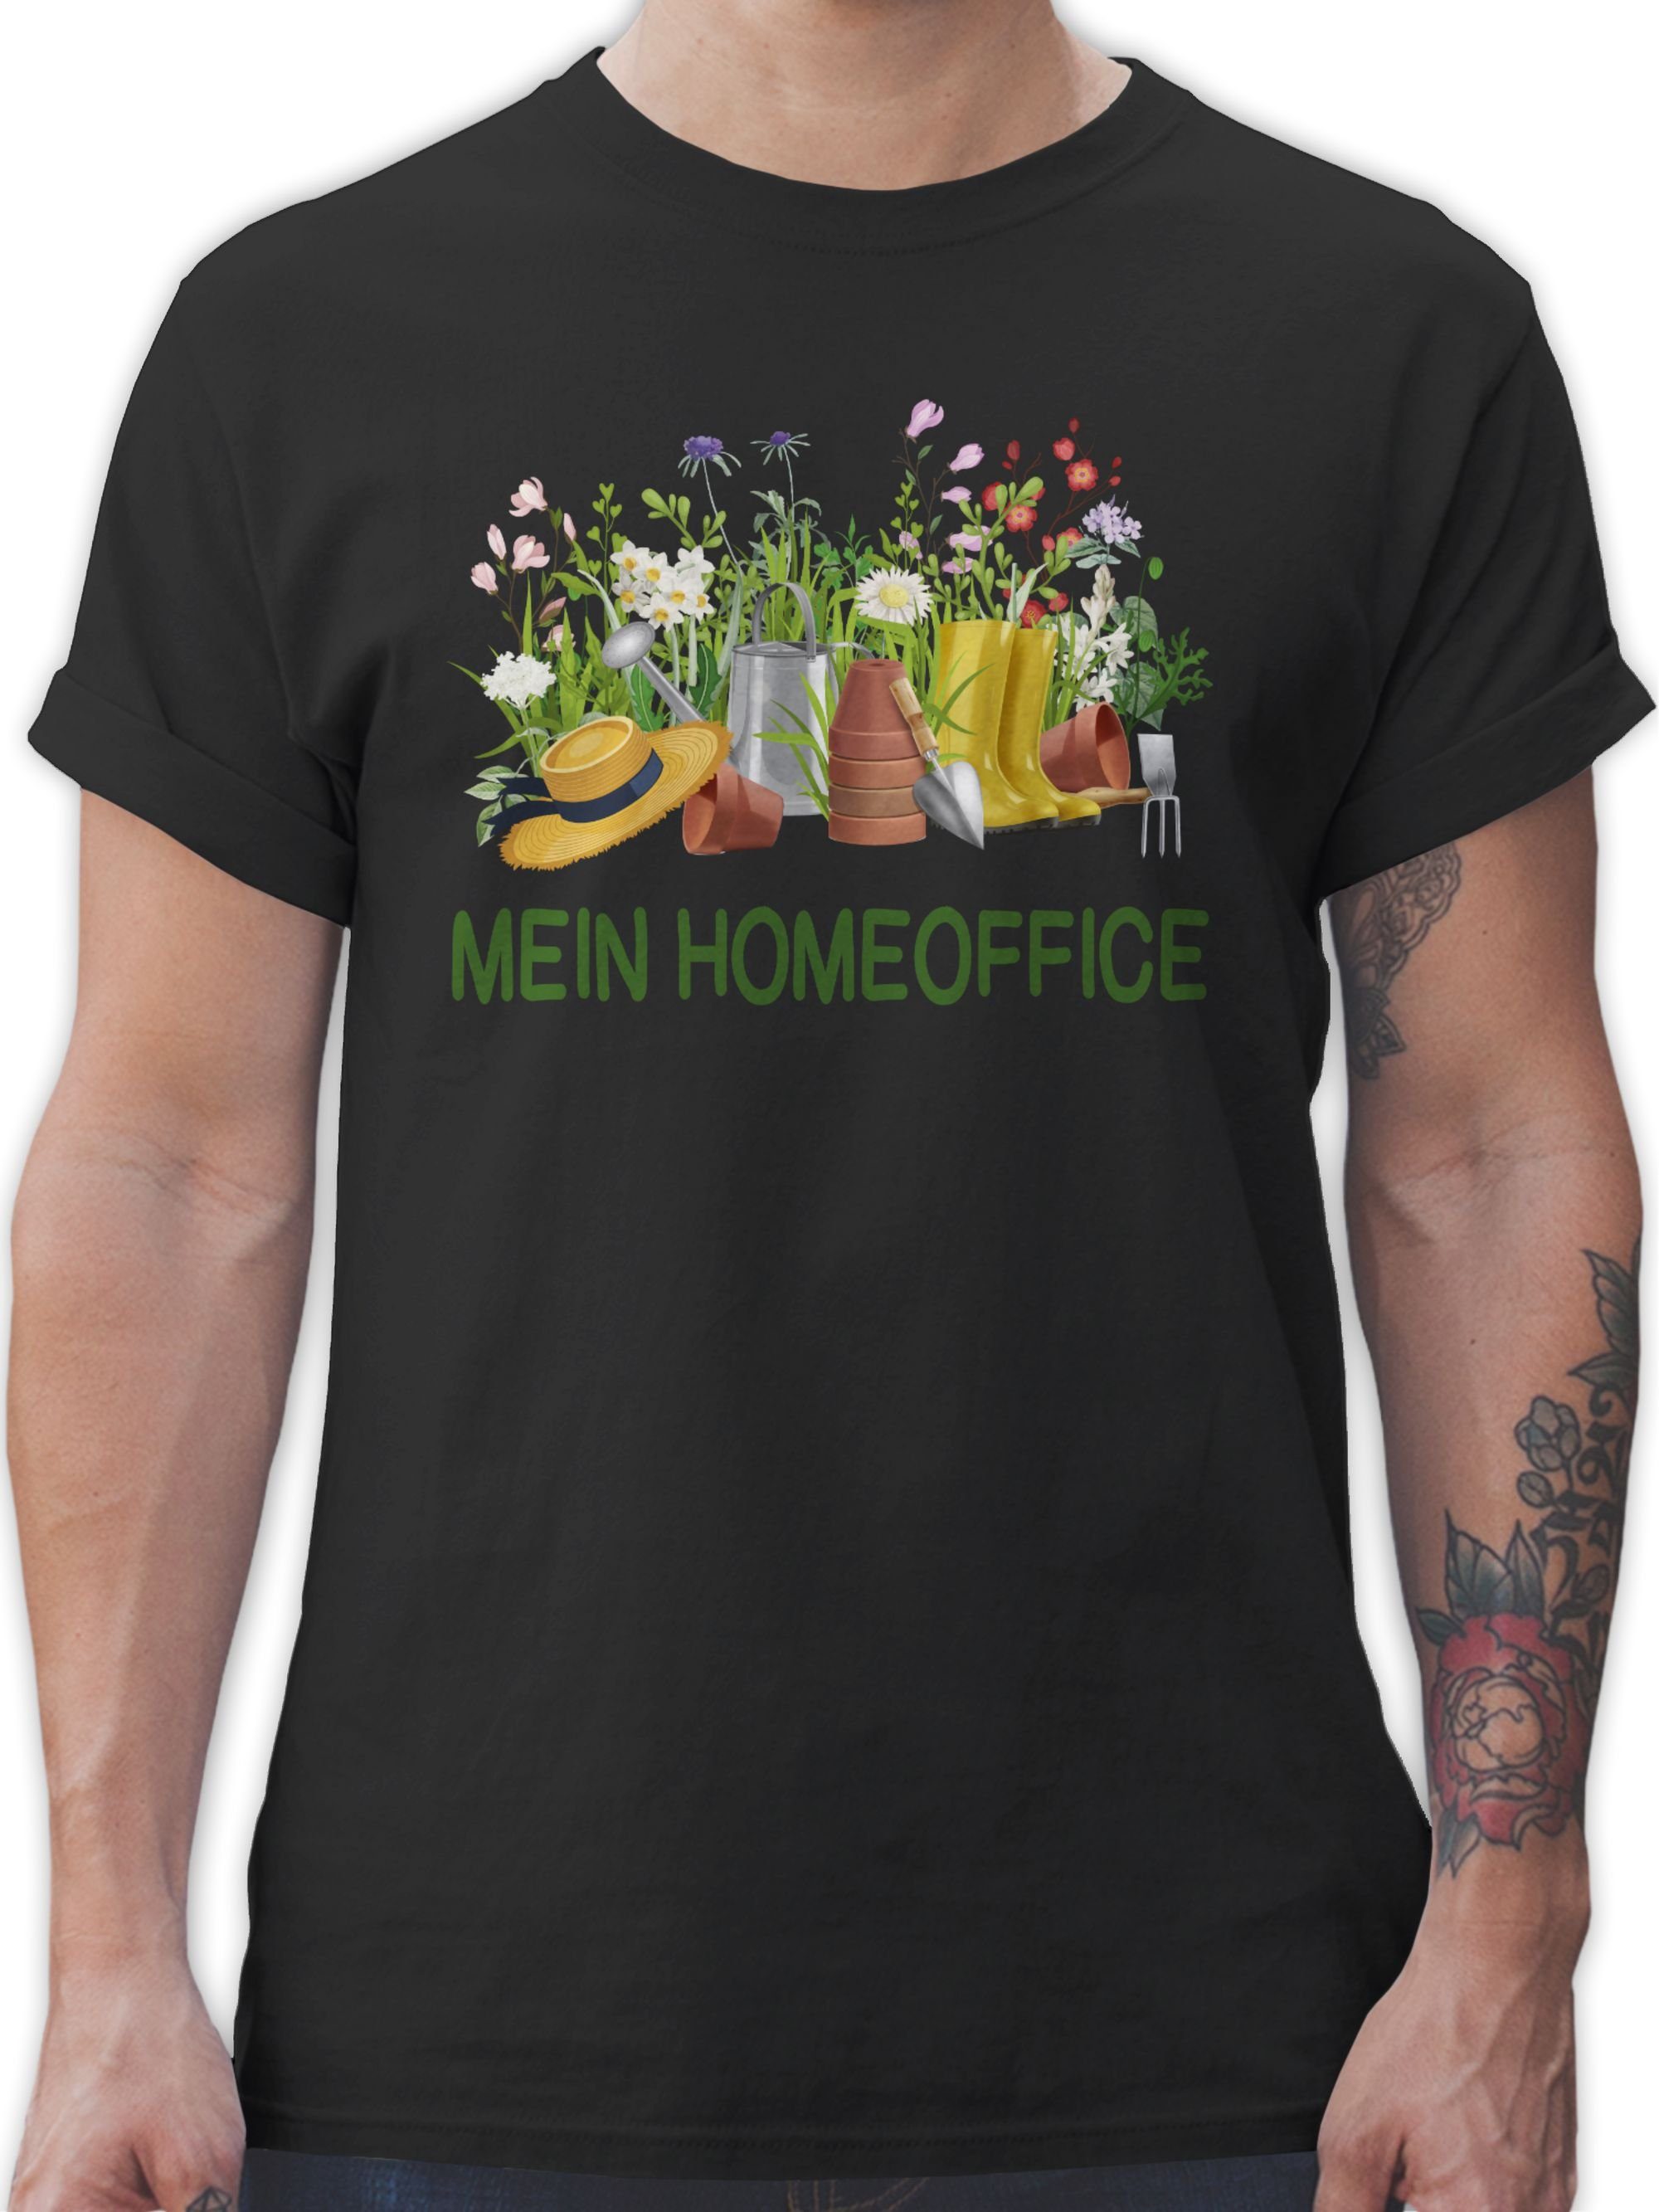 Shirtracer T-Shirt Homeoffice im Garten - Hobby Outfit - Herren Premium T-Shirt garten t shirts männer - sprüche tshirt herren - homeoffice outfit 02 Schwarz